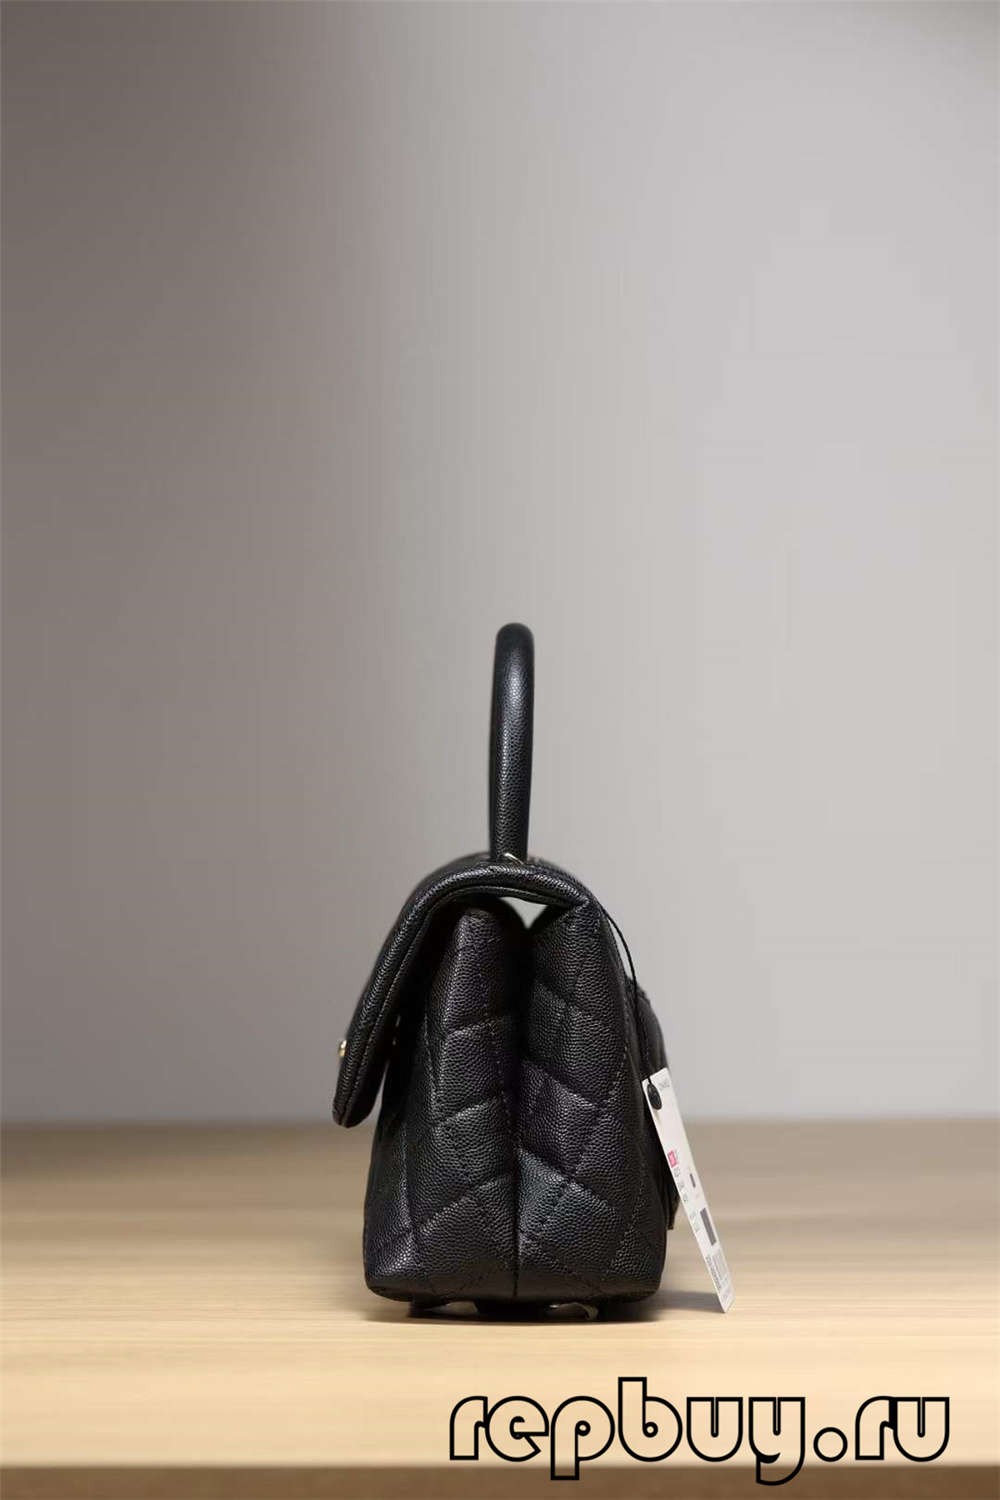 Chanel Coco Handle Top Replica Handbag Black Gold Buckle Look (Cập nhật năm 2022) -Chất lượng tốt nhất Túi Louis Vuitton giả Cửa hàng trực tuyến, túi thiết kế bản sao ru